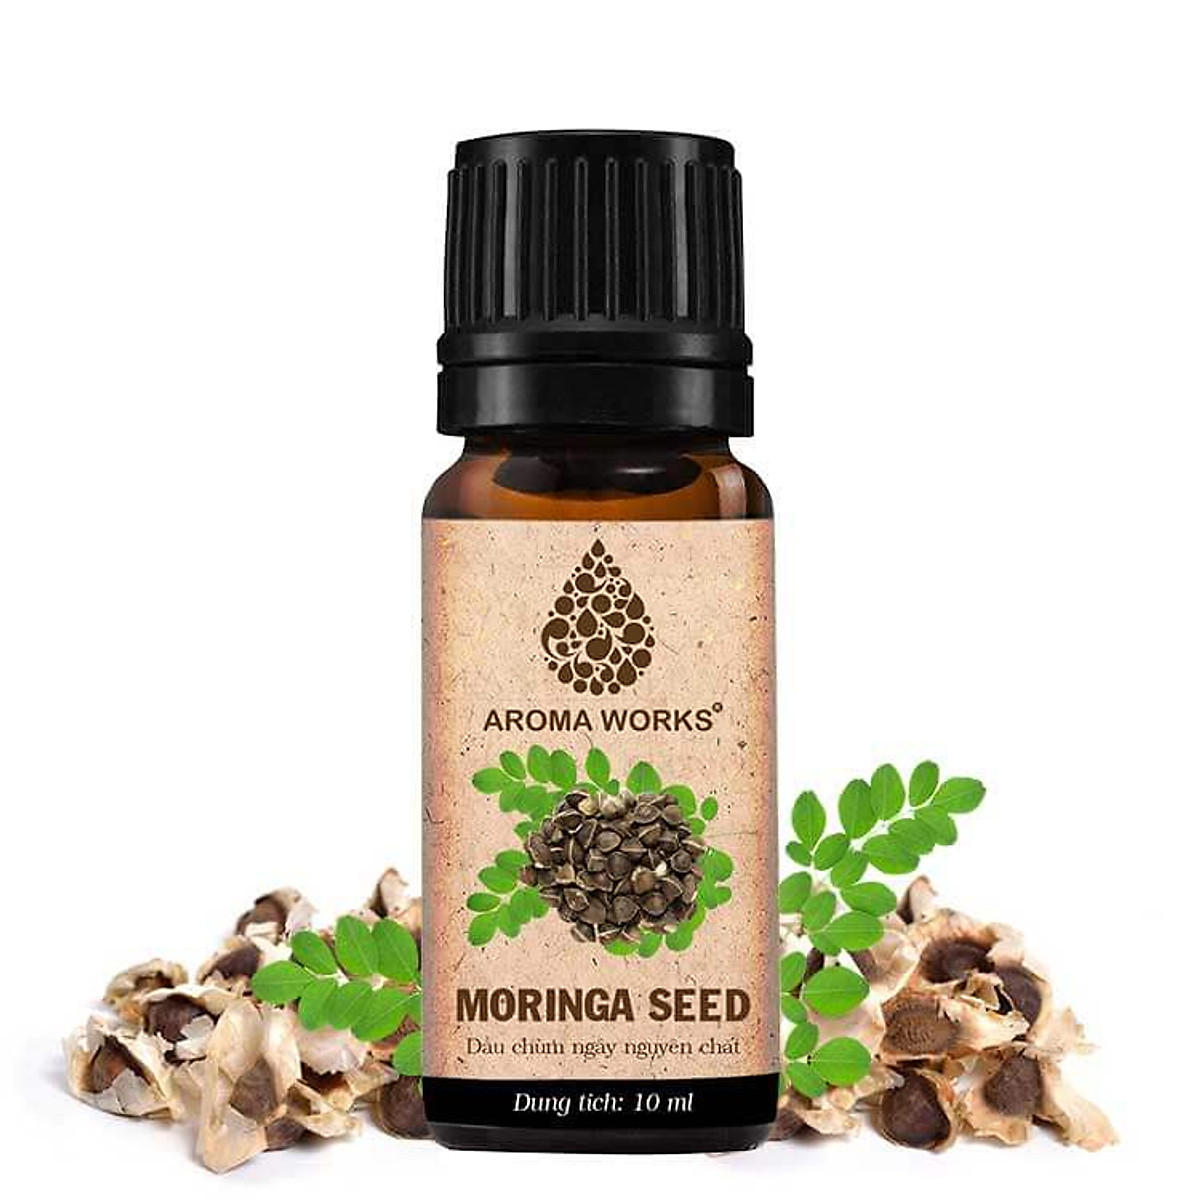 Dầu Hạt Chùm Ngây Aroma Works Moringa Seed Oil